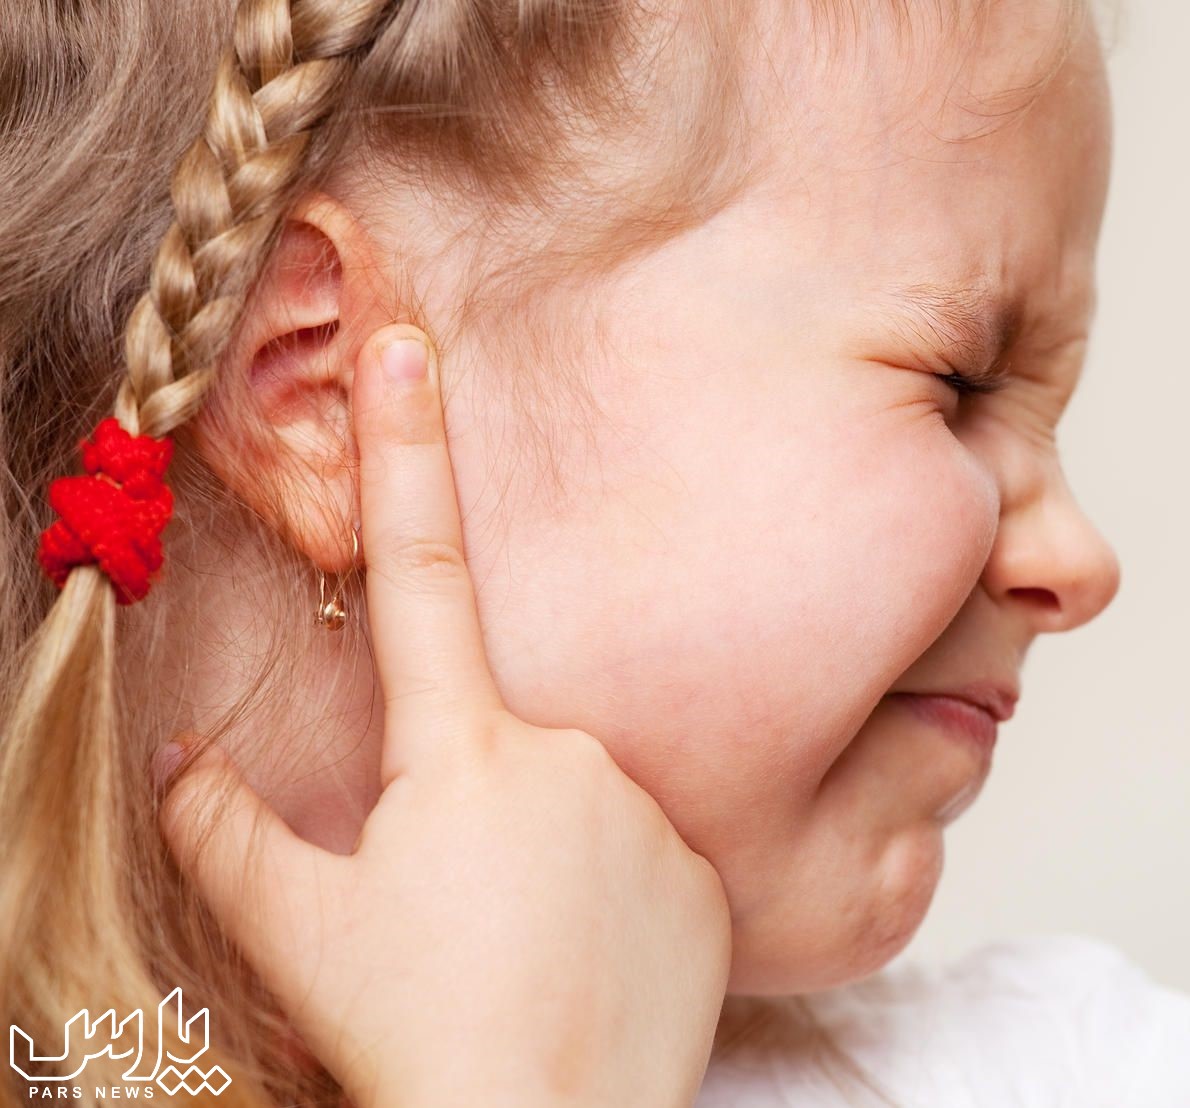 احساس درد در گوش - درمان عفونت گوش در خانه